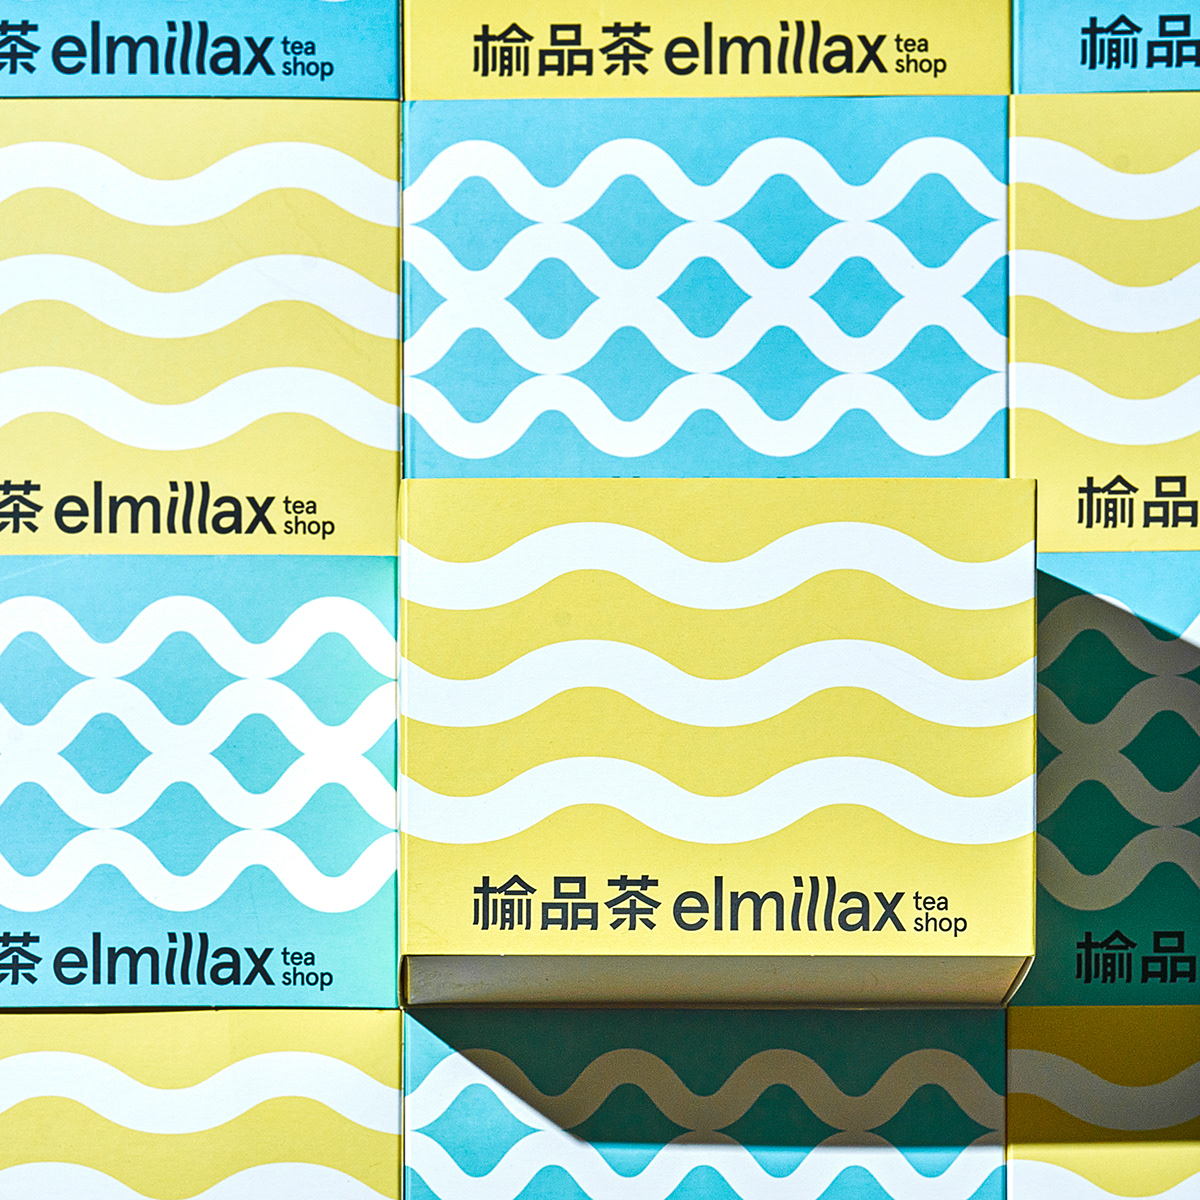 凉茶品牌包装设计：榆品茶Elmillax